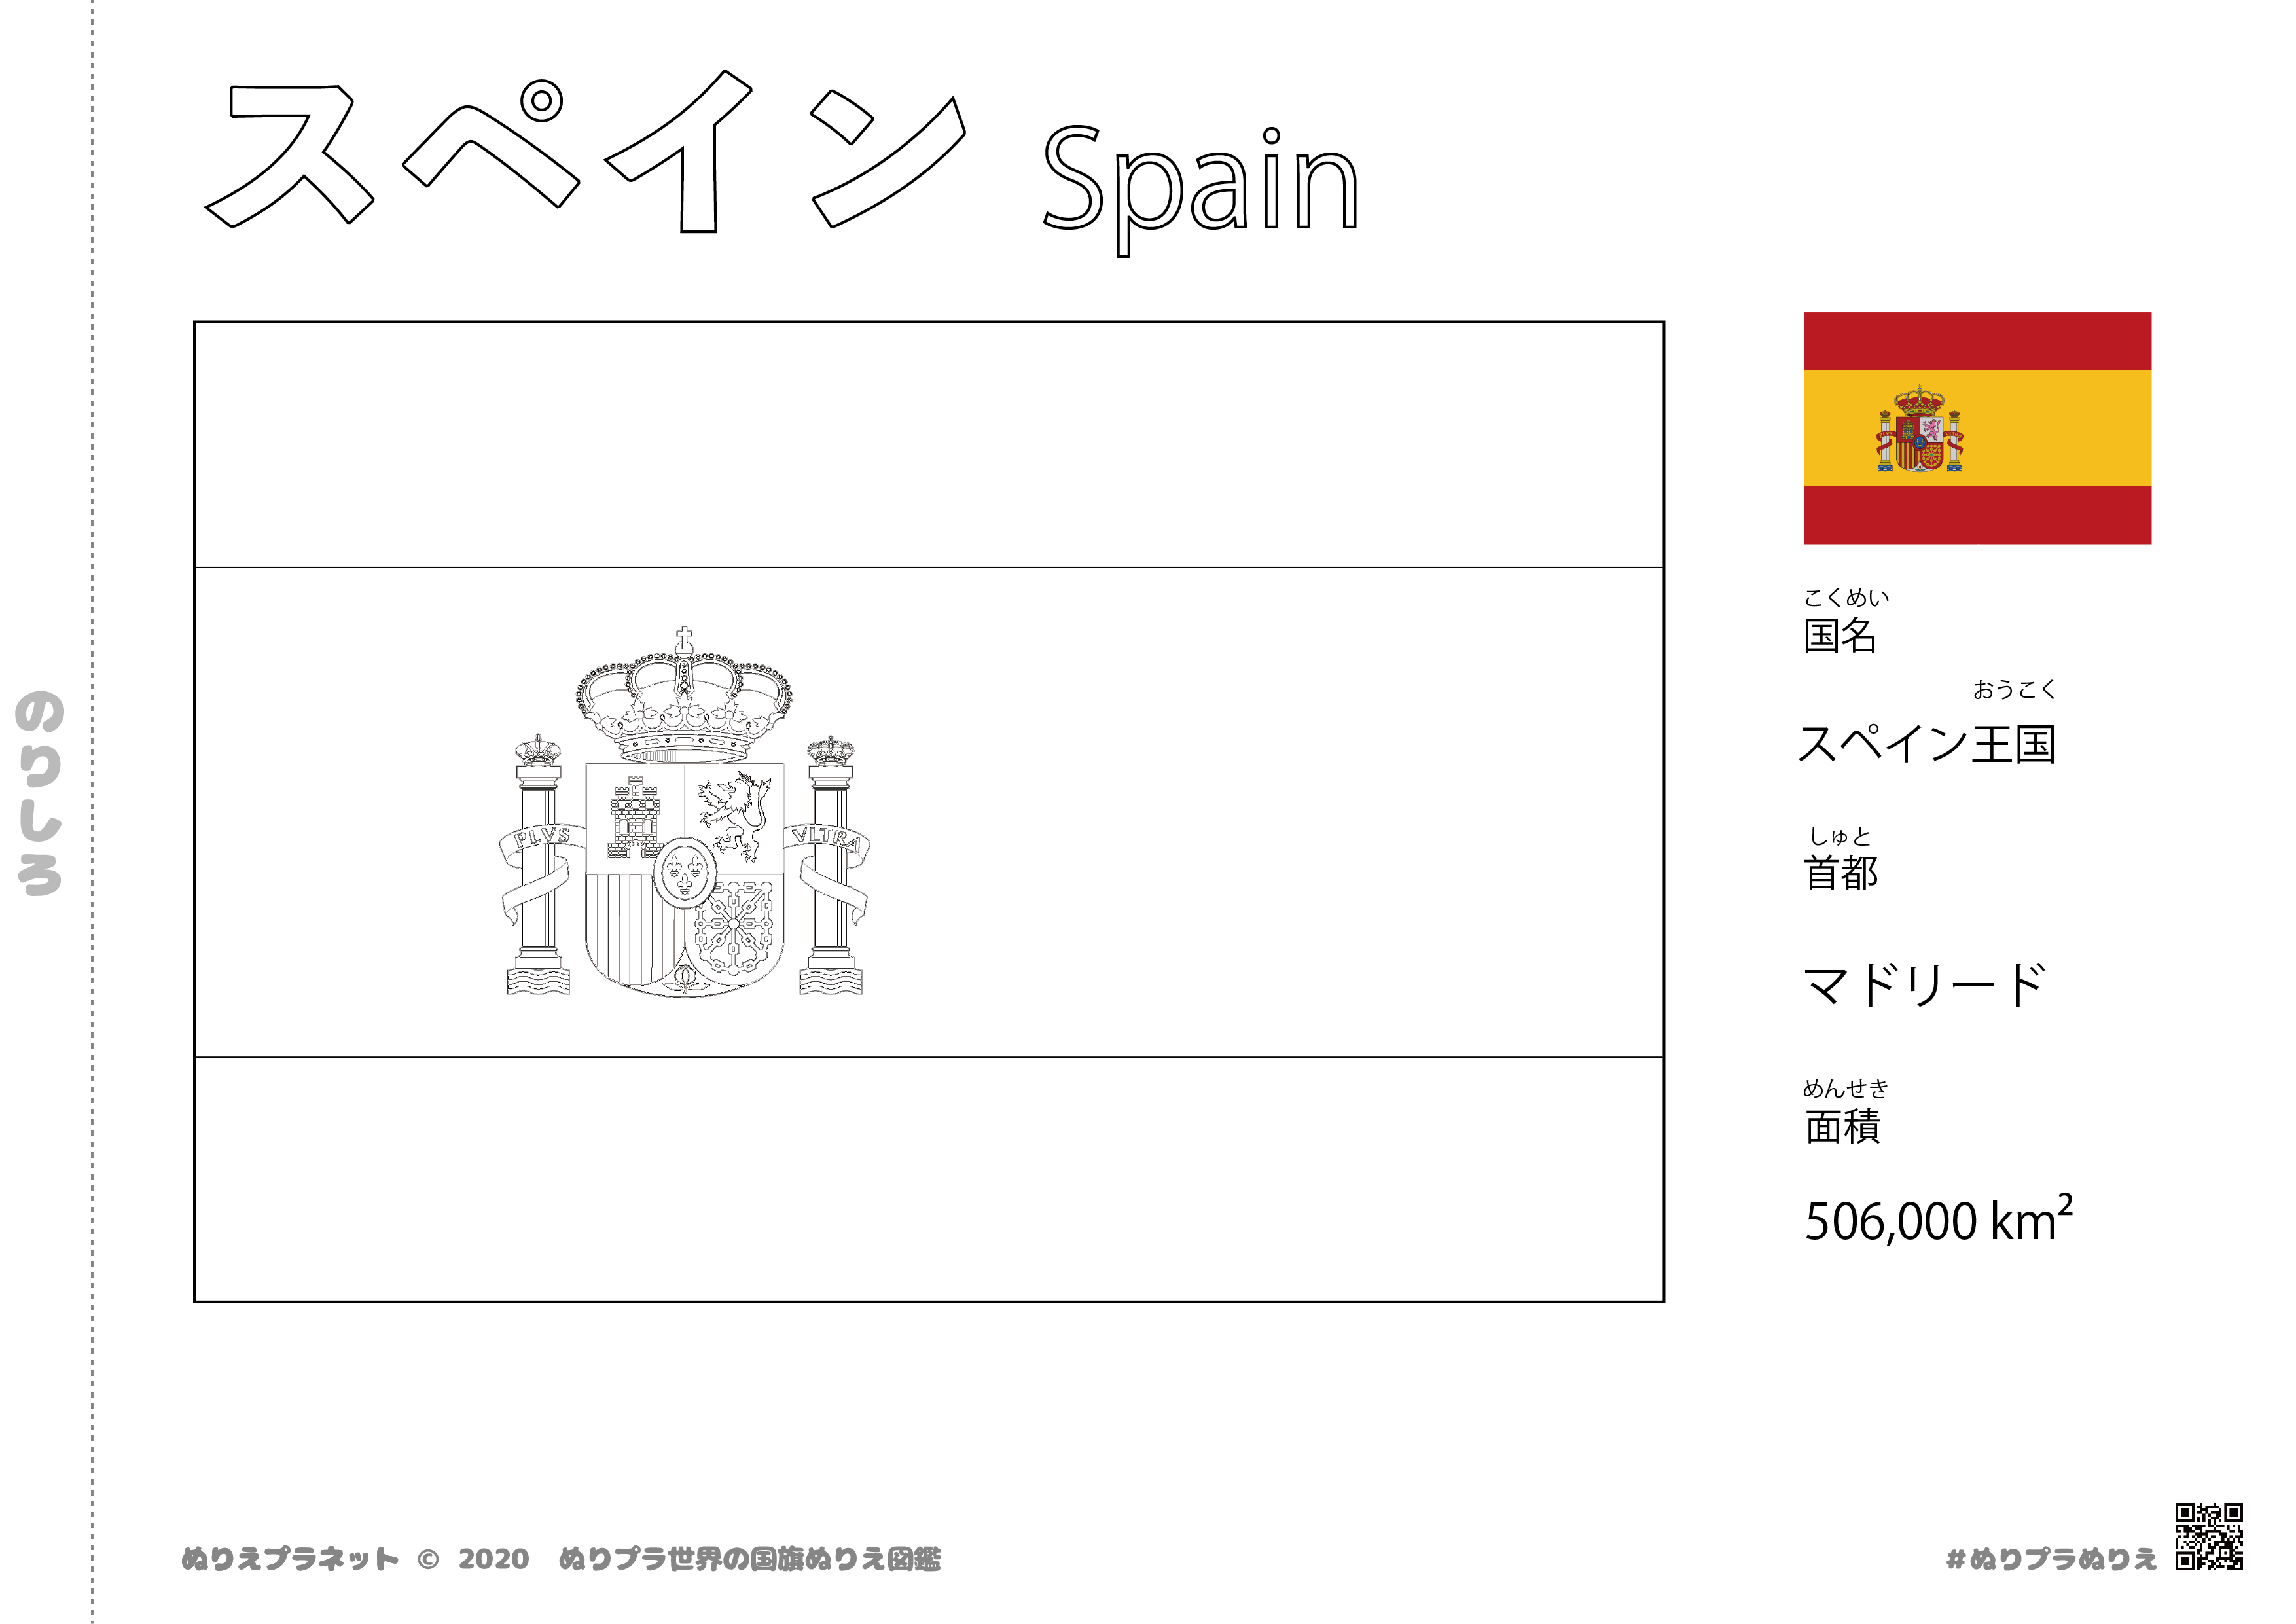 スペインの国旗塗り絵です。国名、首都、面積も覚えられます。